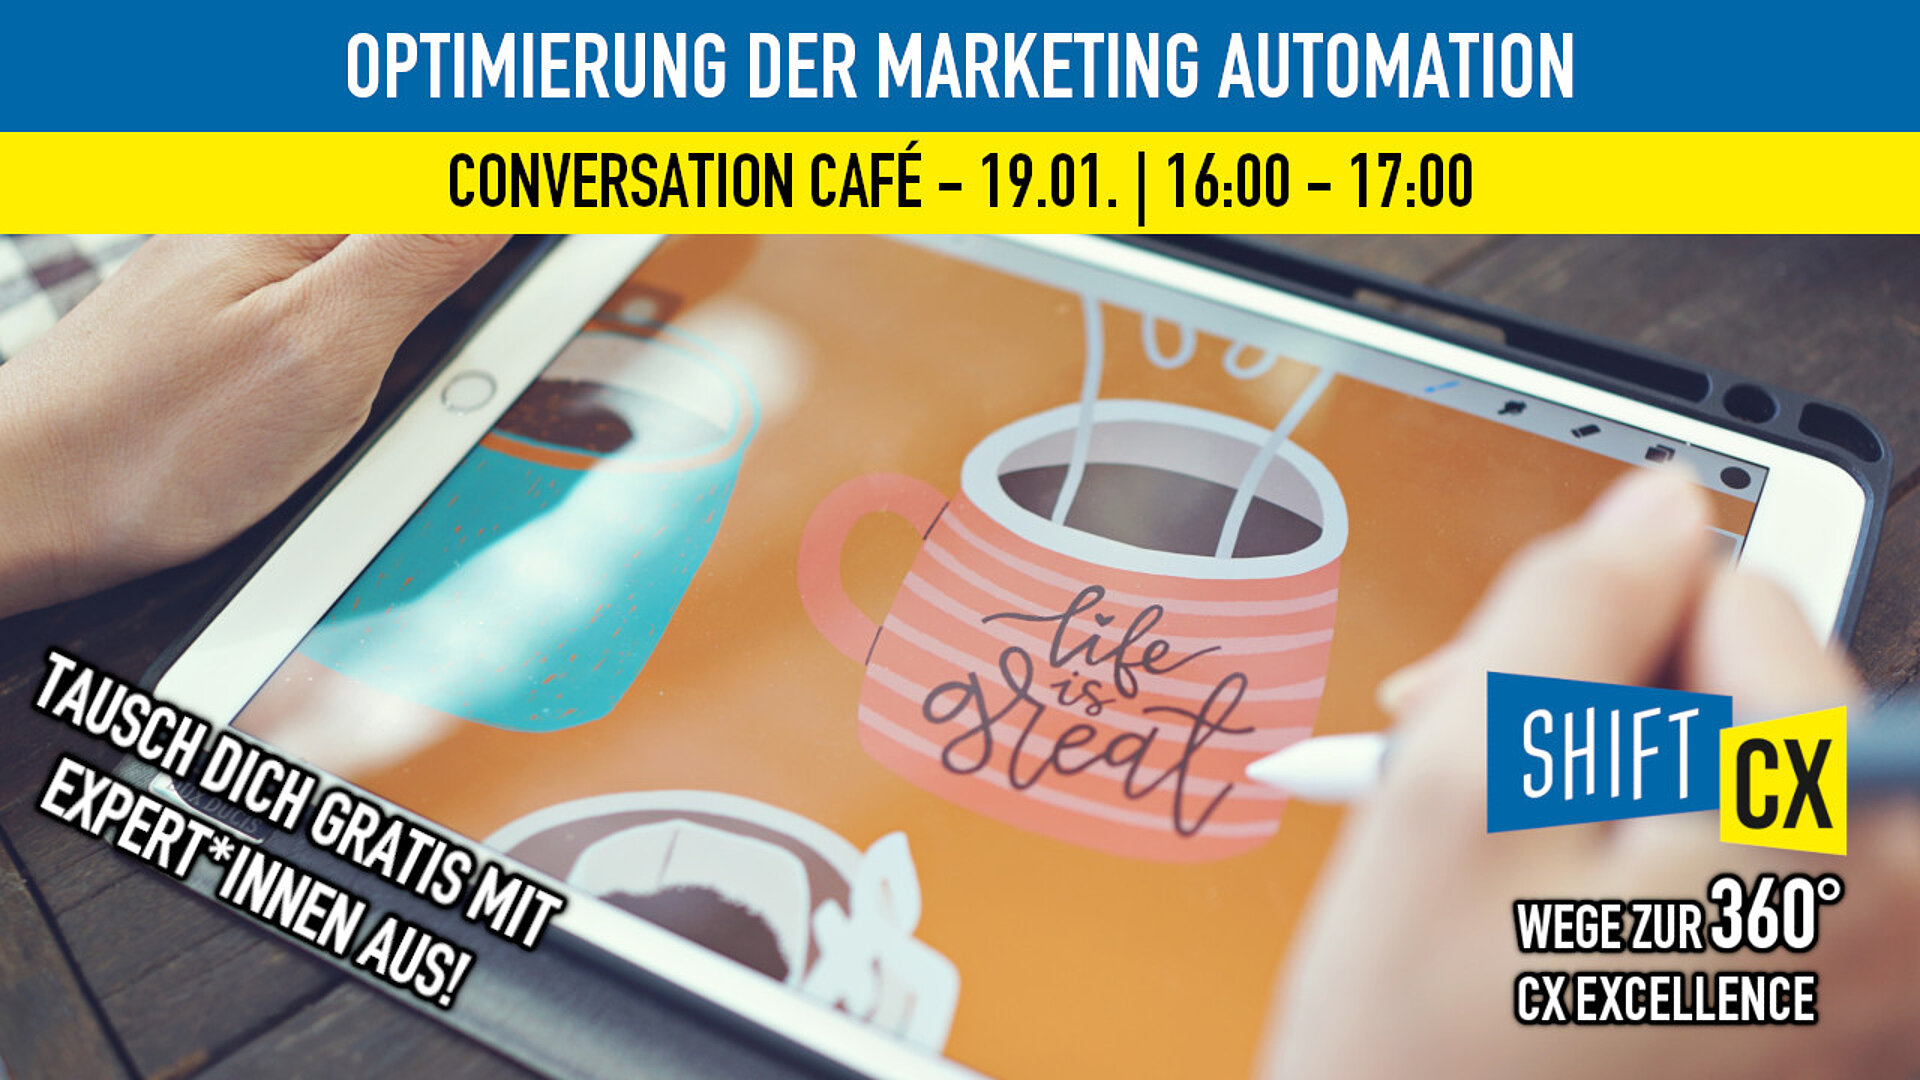 Conversation Café - Optimierung der Marketing Automation